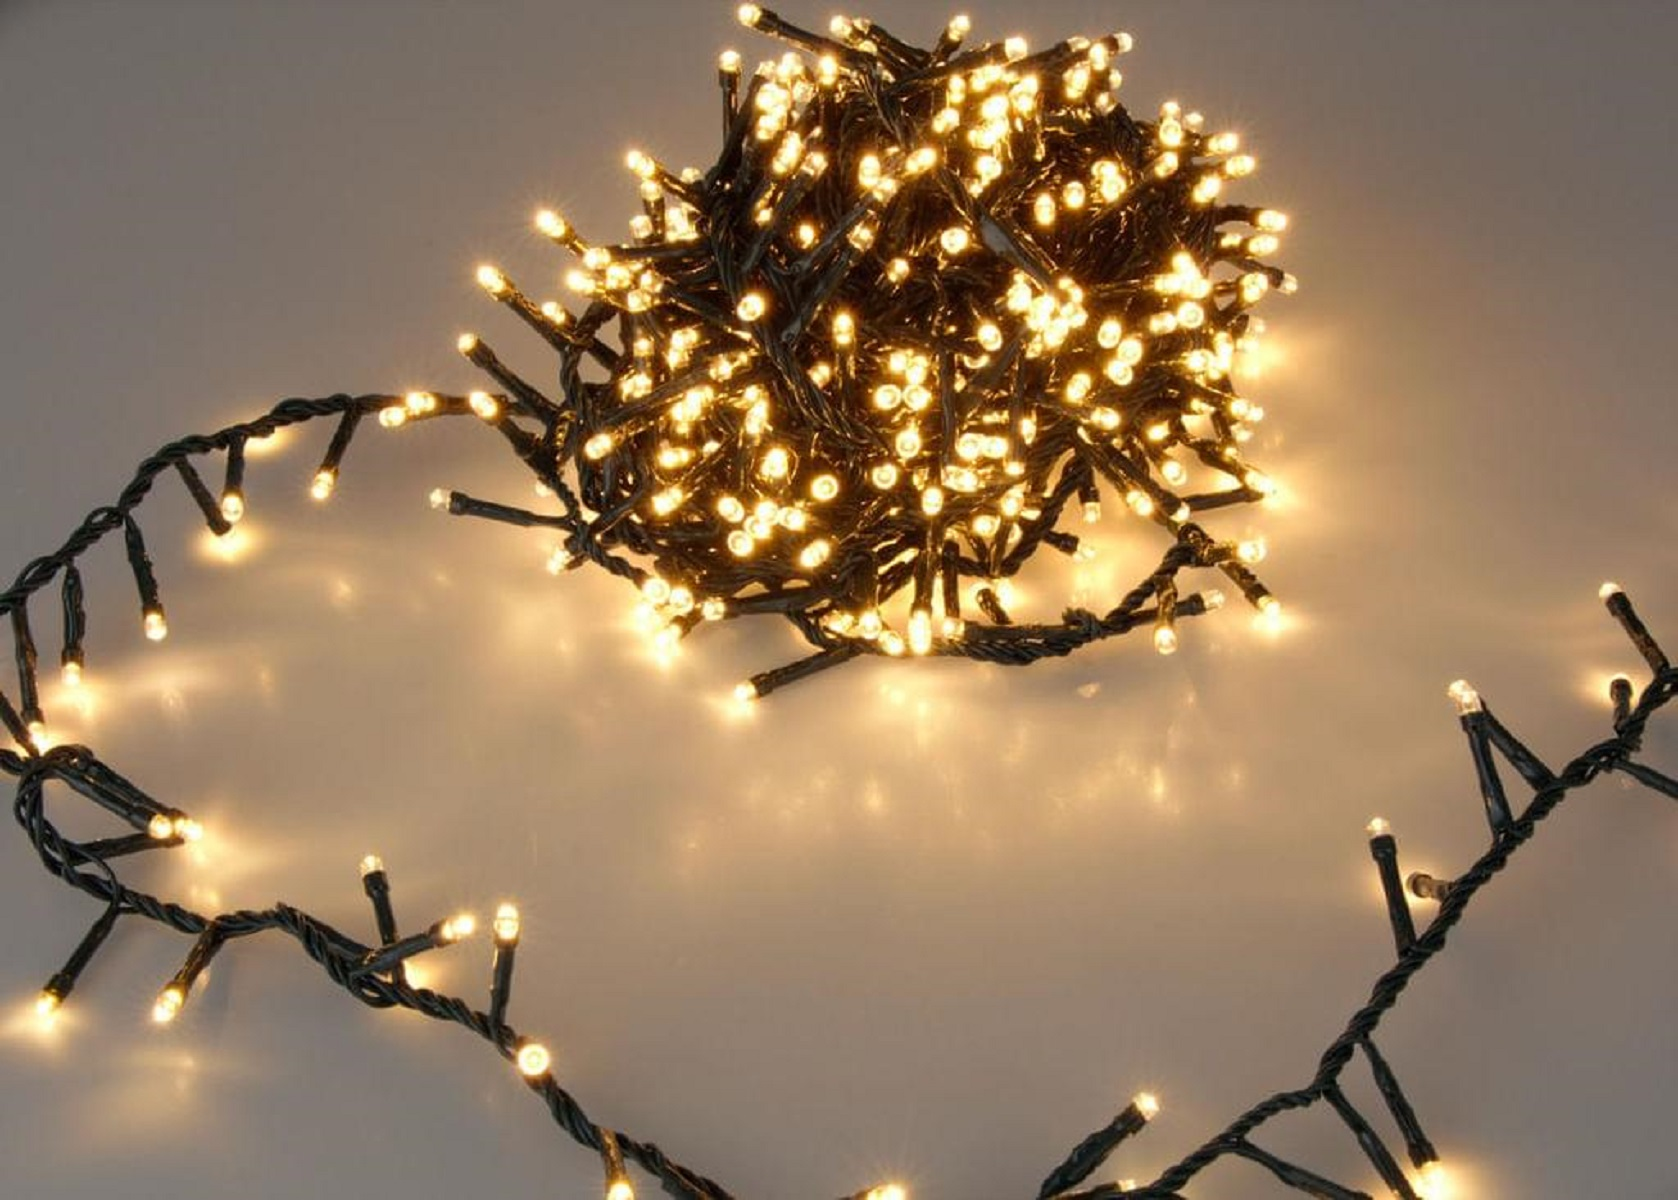 SLABO Weihnachtsbeleuchtung 1500er LED Weihnachten Weihnachtsbaum Deko Lichter Dekoration Lichterkette